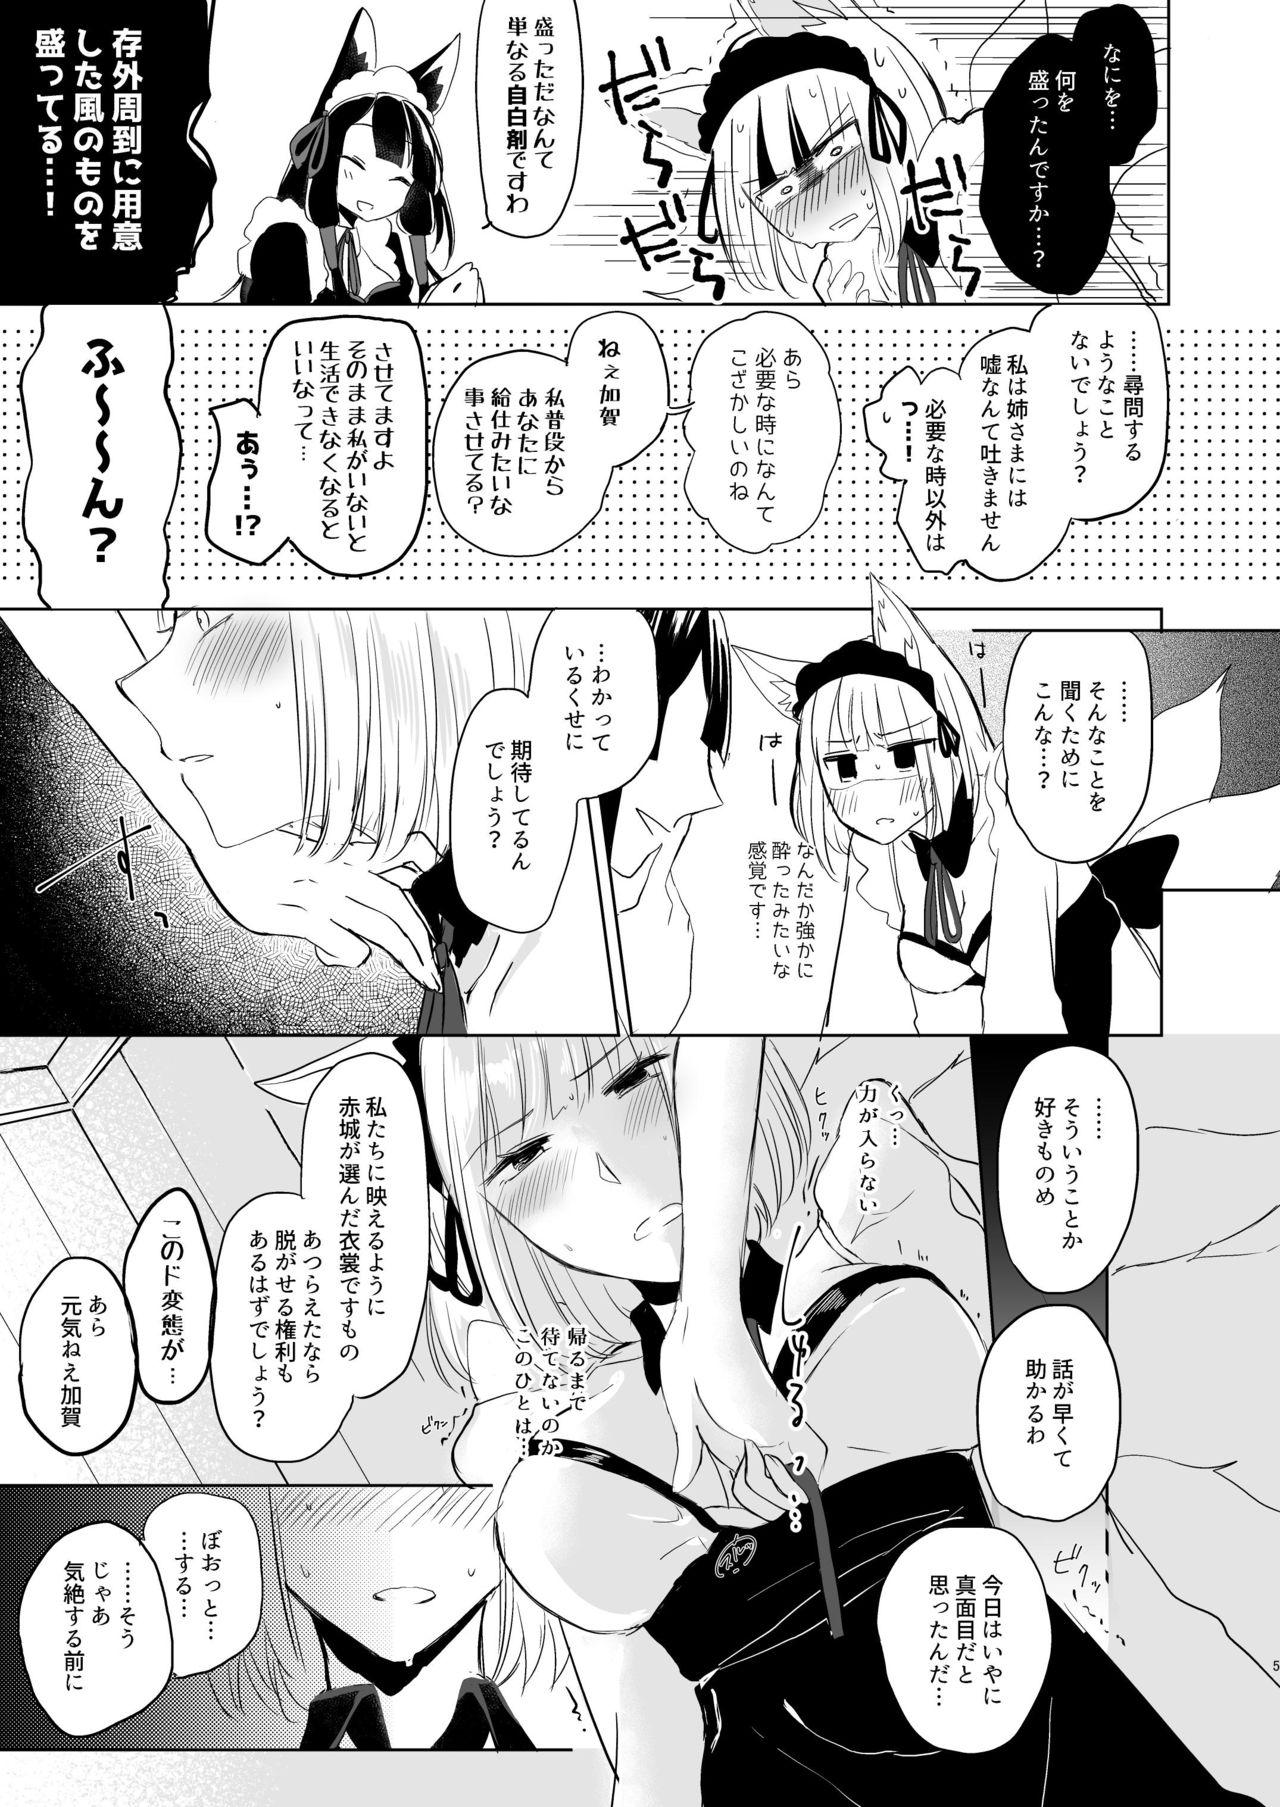 Oralsex Nugasouga nugasumaiga kawaii koto ni wa kawarinai - Azur lane Oriental - Page 4